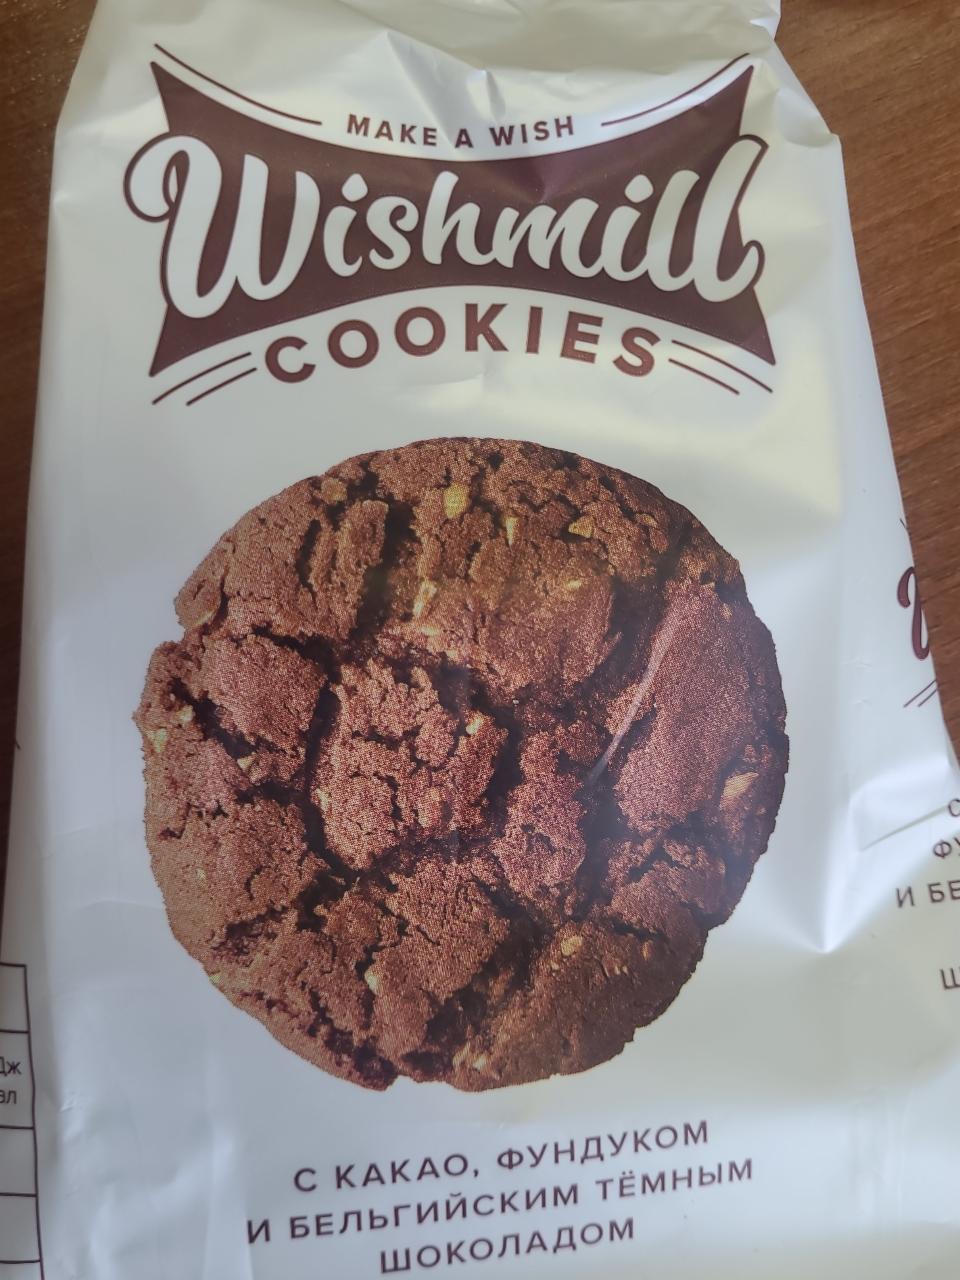 Фото - печенье с какао, фундуком и бельгийским темным шоколадом Wishmill